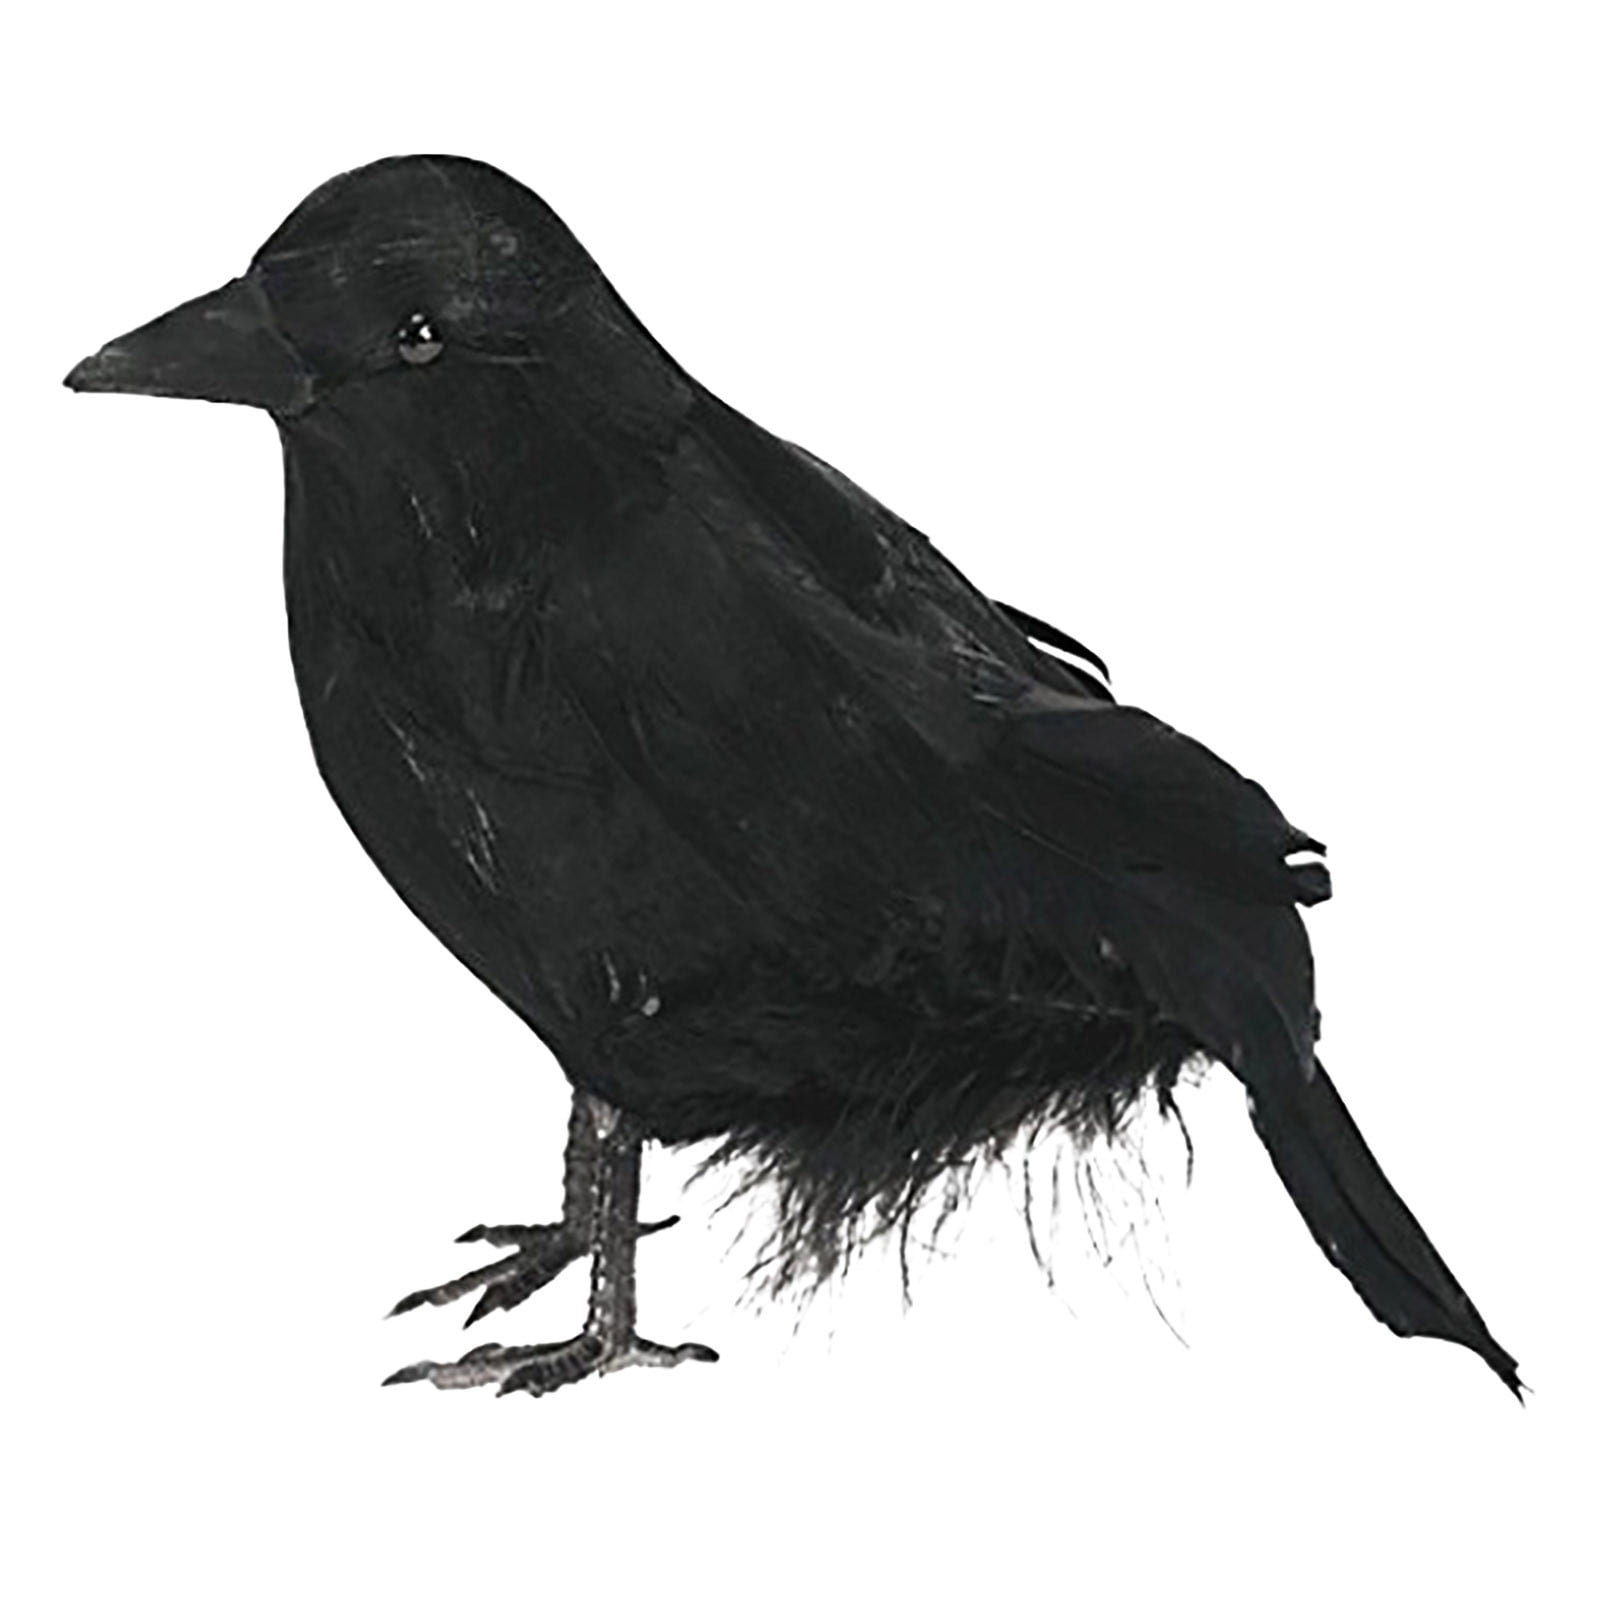 Artificial Realistic Woodland Black Birds for Garden Home Halloween Decor 